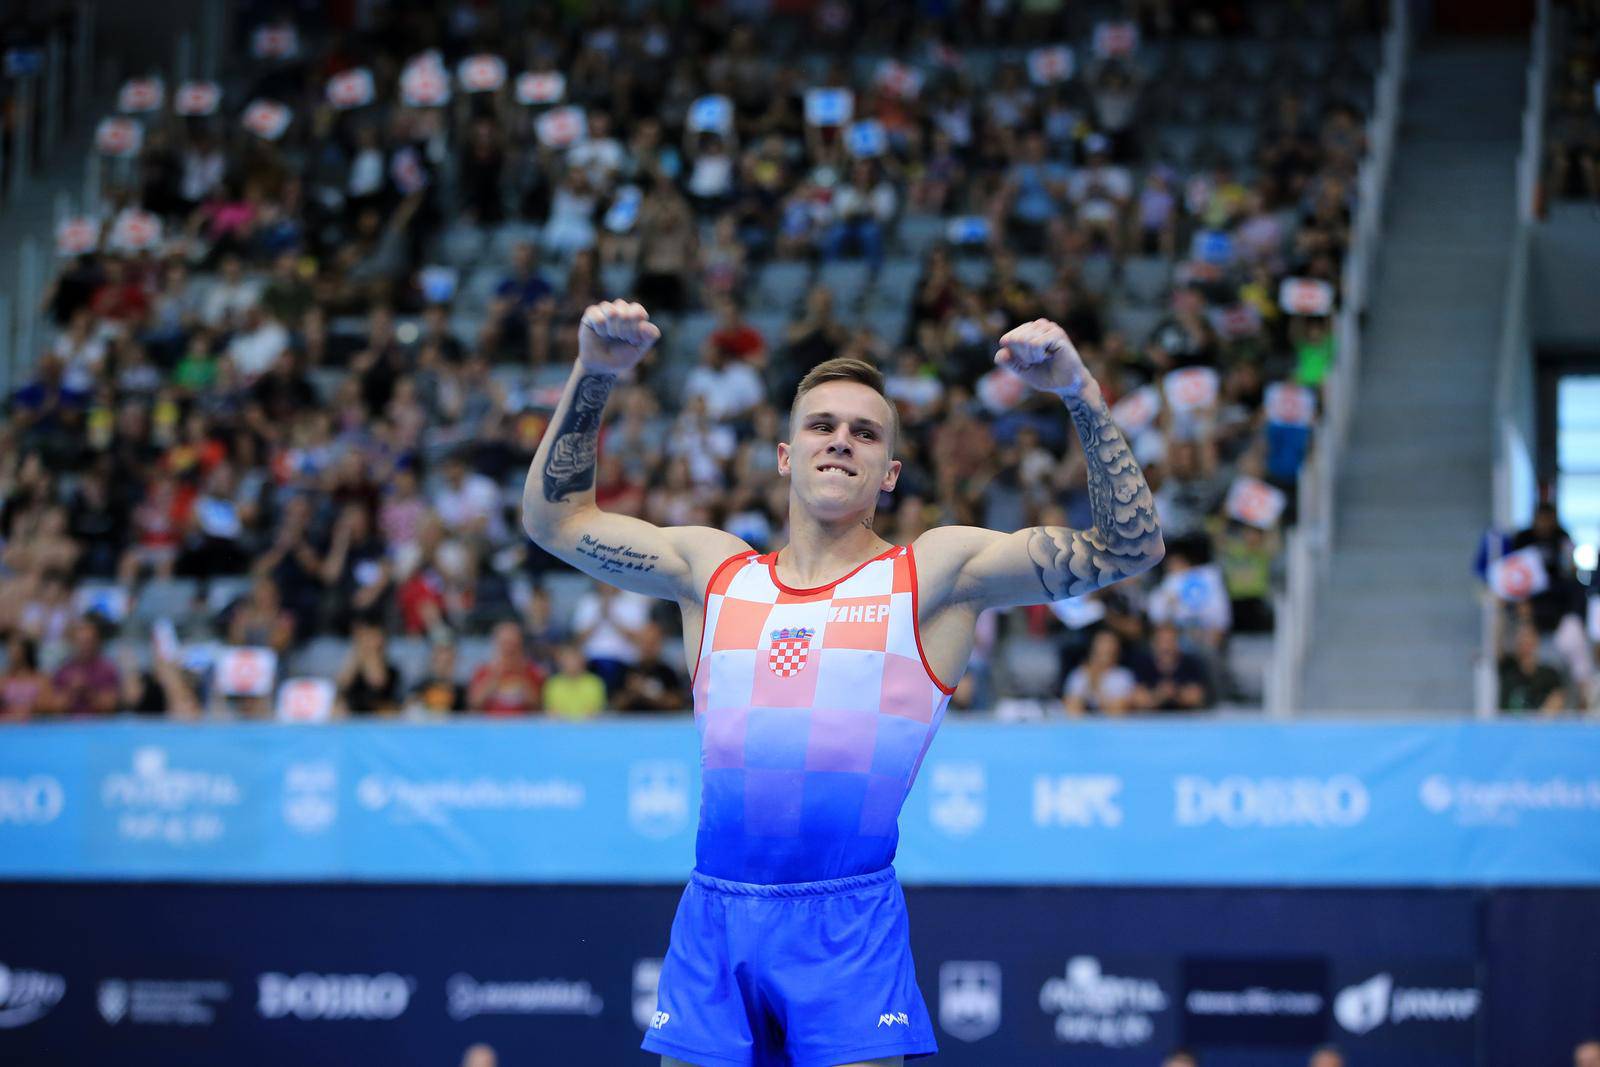 Hrvatski gimnastičar Aurel Benović osvojio je zlatno odličje u vježbi na tlu na DOBRO World Cupu u Osijeku